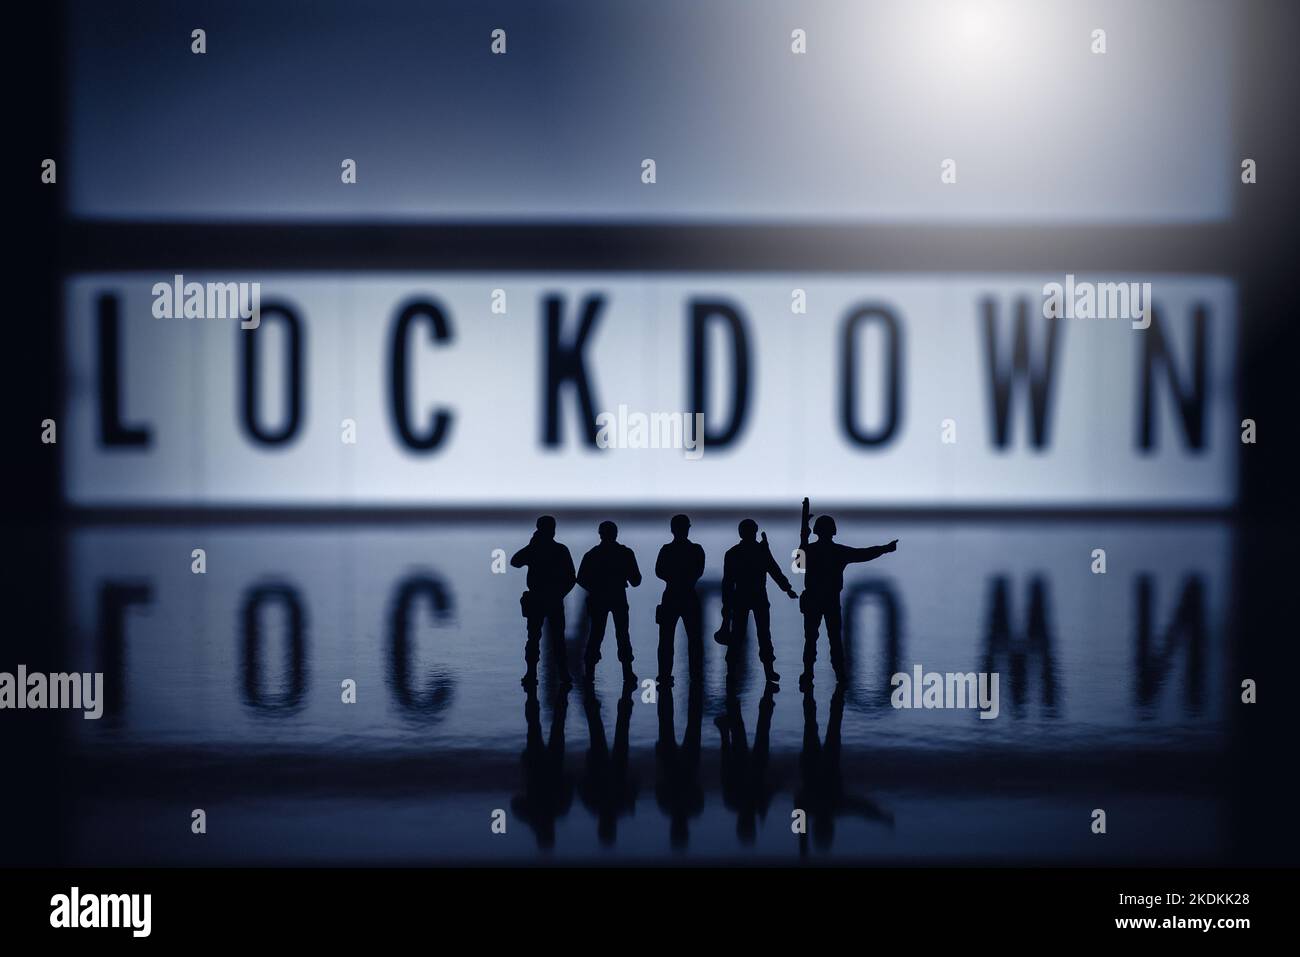 Lockdown Concept images - personaggi giocattolo in miniatura a chiave bassa delle forze di sicurezza - silhouette delle forze dell'esercito o della polizia. Foto Stock